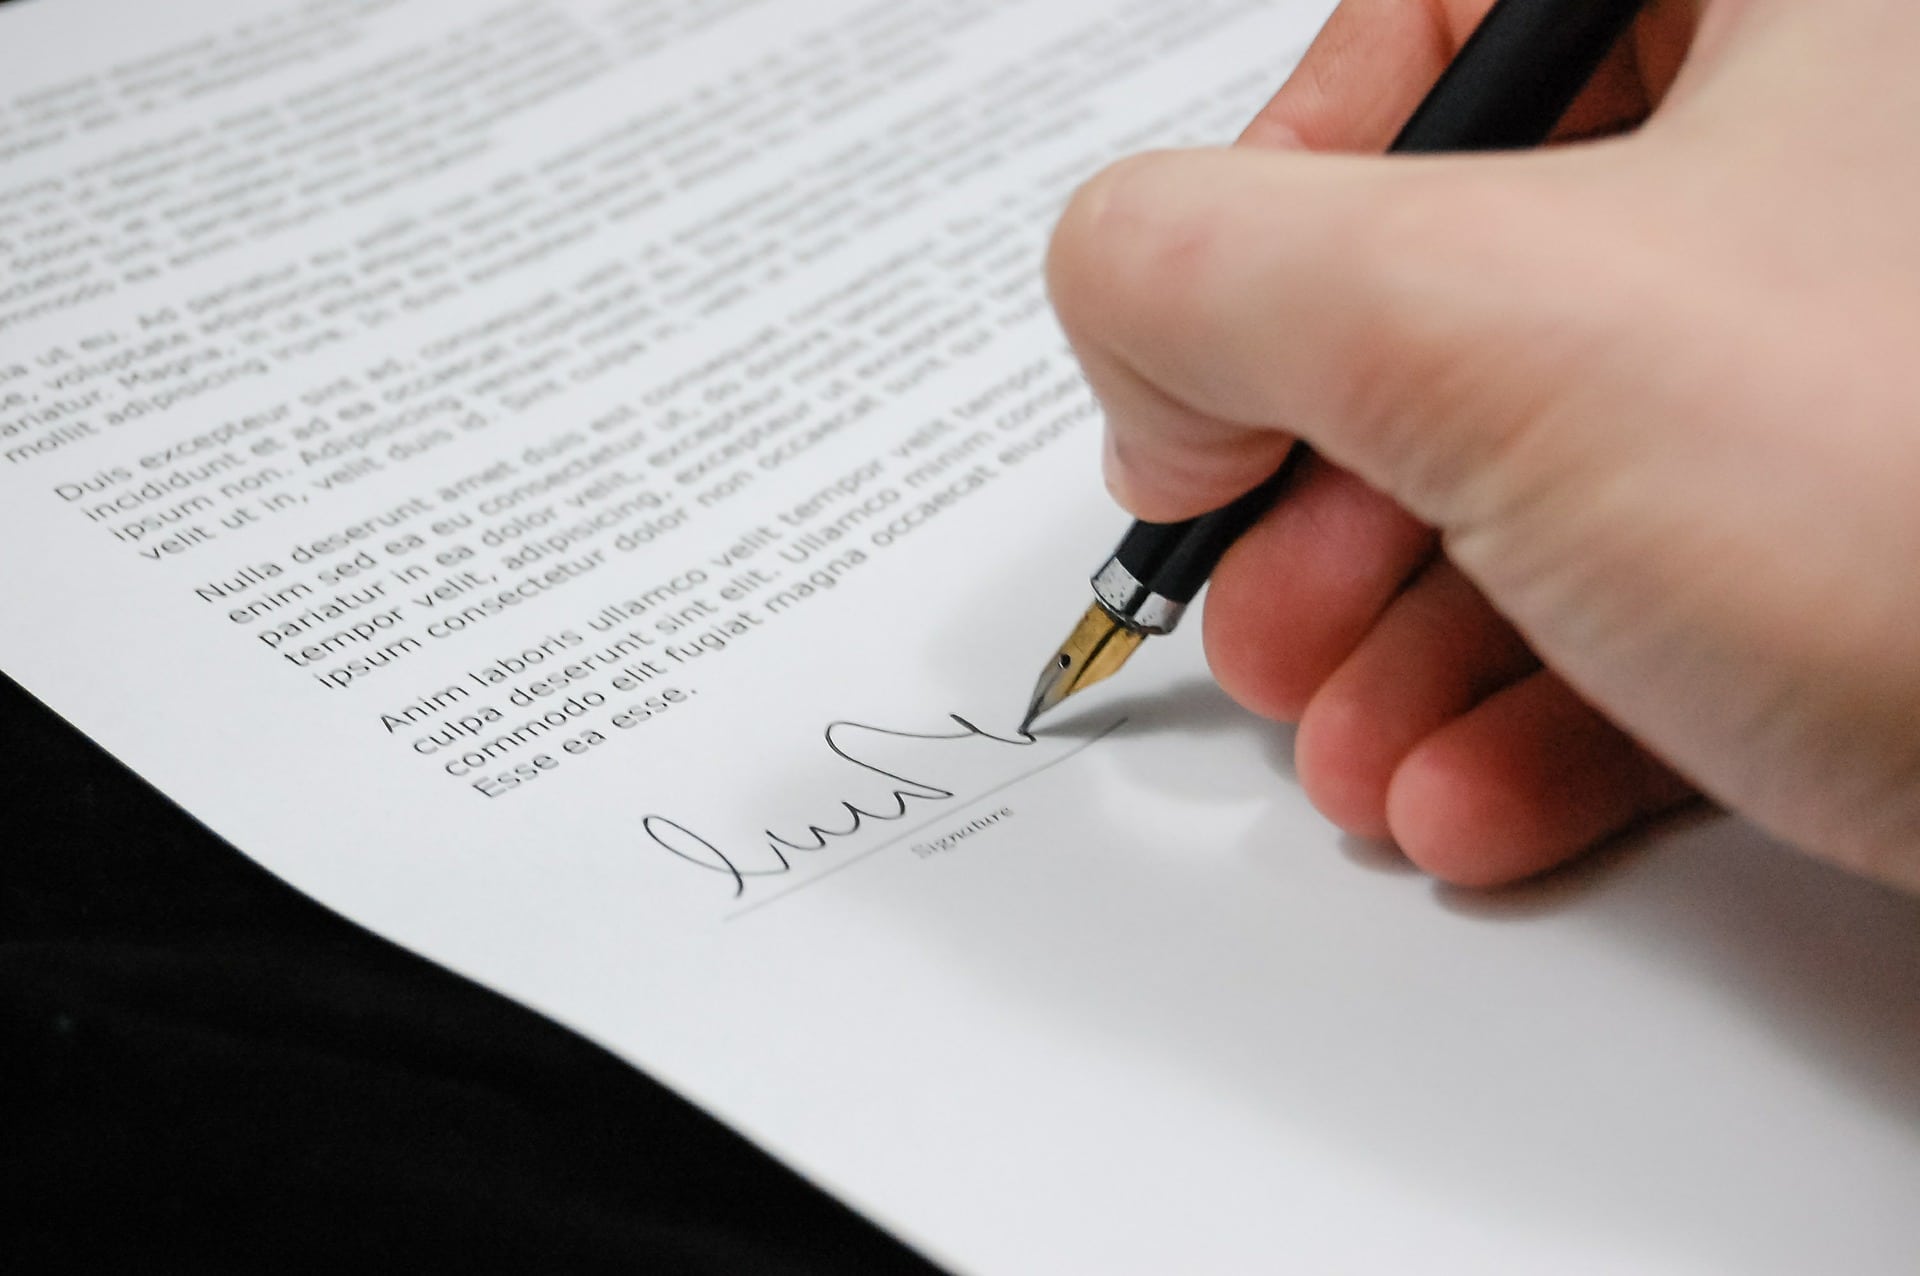 Podepsat smlouvu o rychlé půjčce